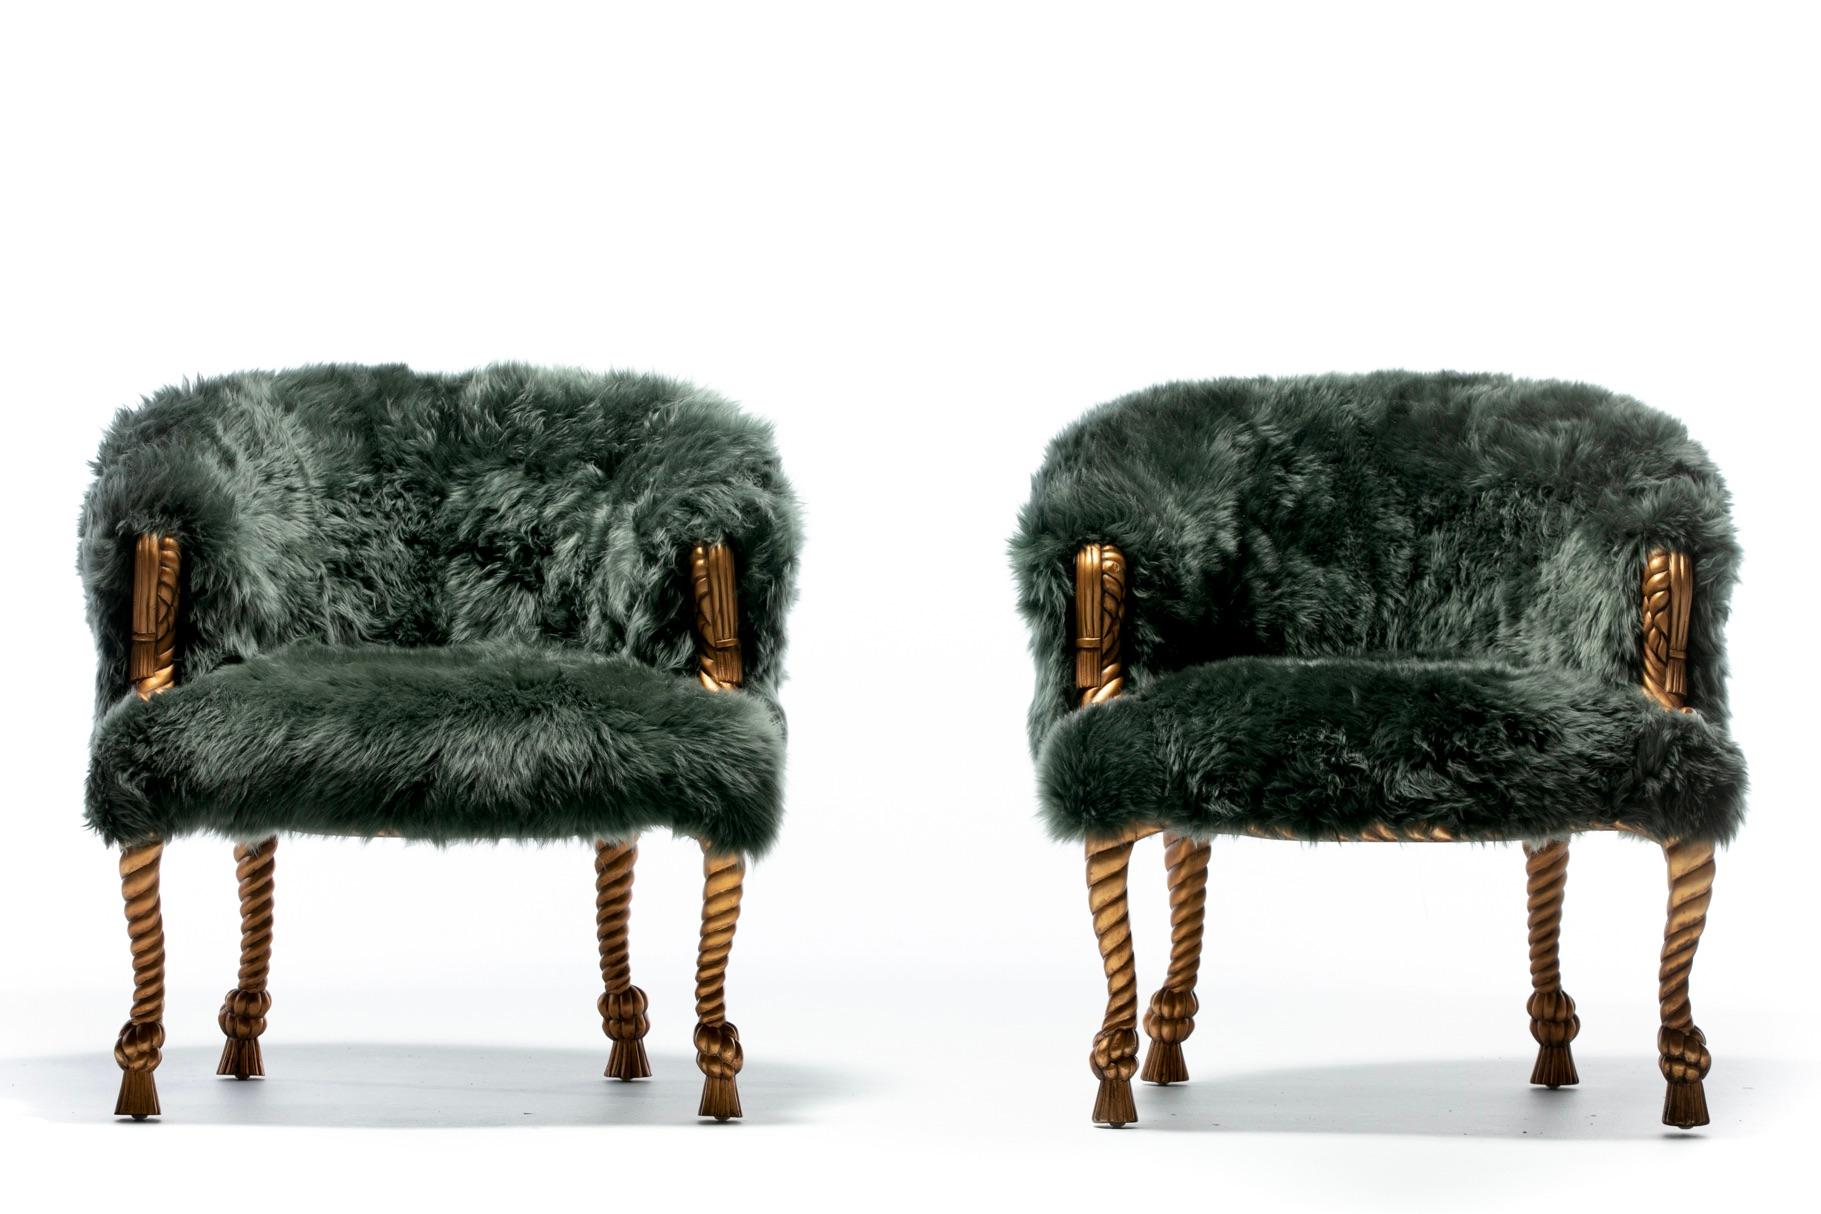 Paire de chaises de style Napoléon III en corde dorée et glands, fraîchement recouvertes de peau de mouton émeraude cousue à la main, d'un raffinement et d'un glamour inégalés. Français. Chic. Une combinaison qui fait mouche. Comme l'or avec les